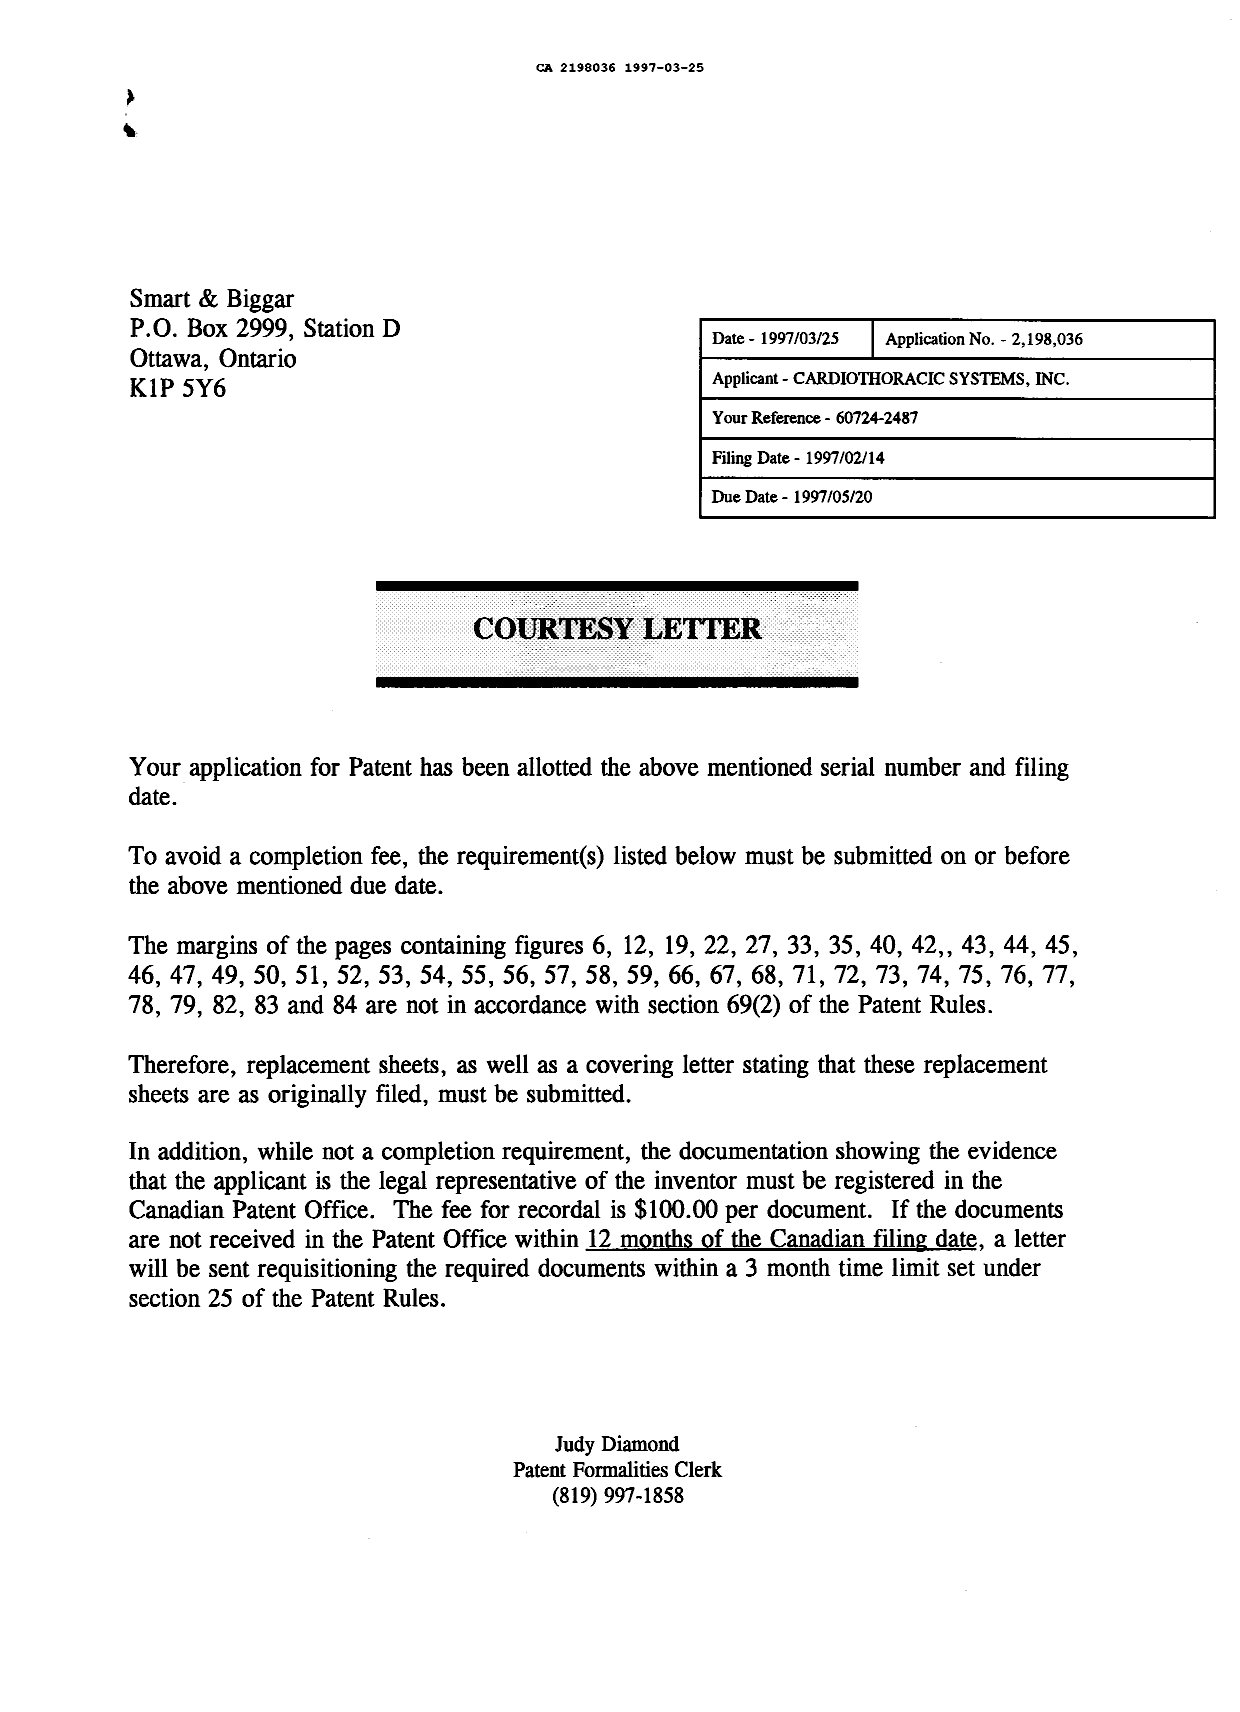 Document de brevet canadien 2198036. Lettre du bureau 19970325. Image 1 de 1